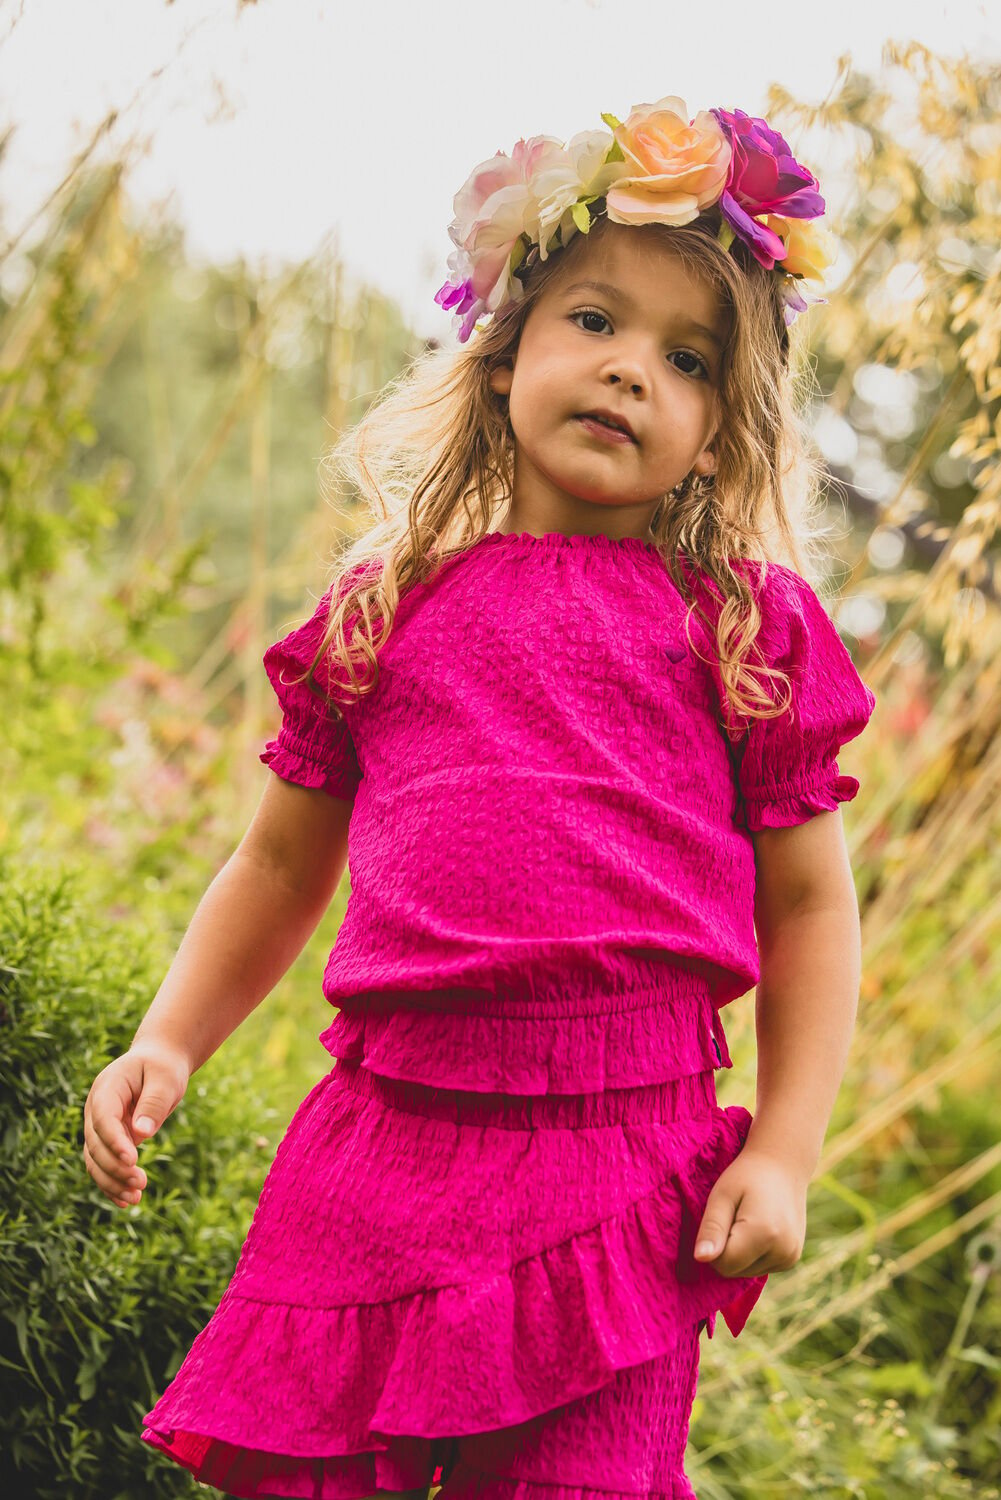 LOOXS Little Meisjes Tops & T-shirts 2412-7146 Roze